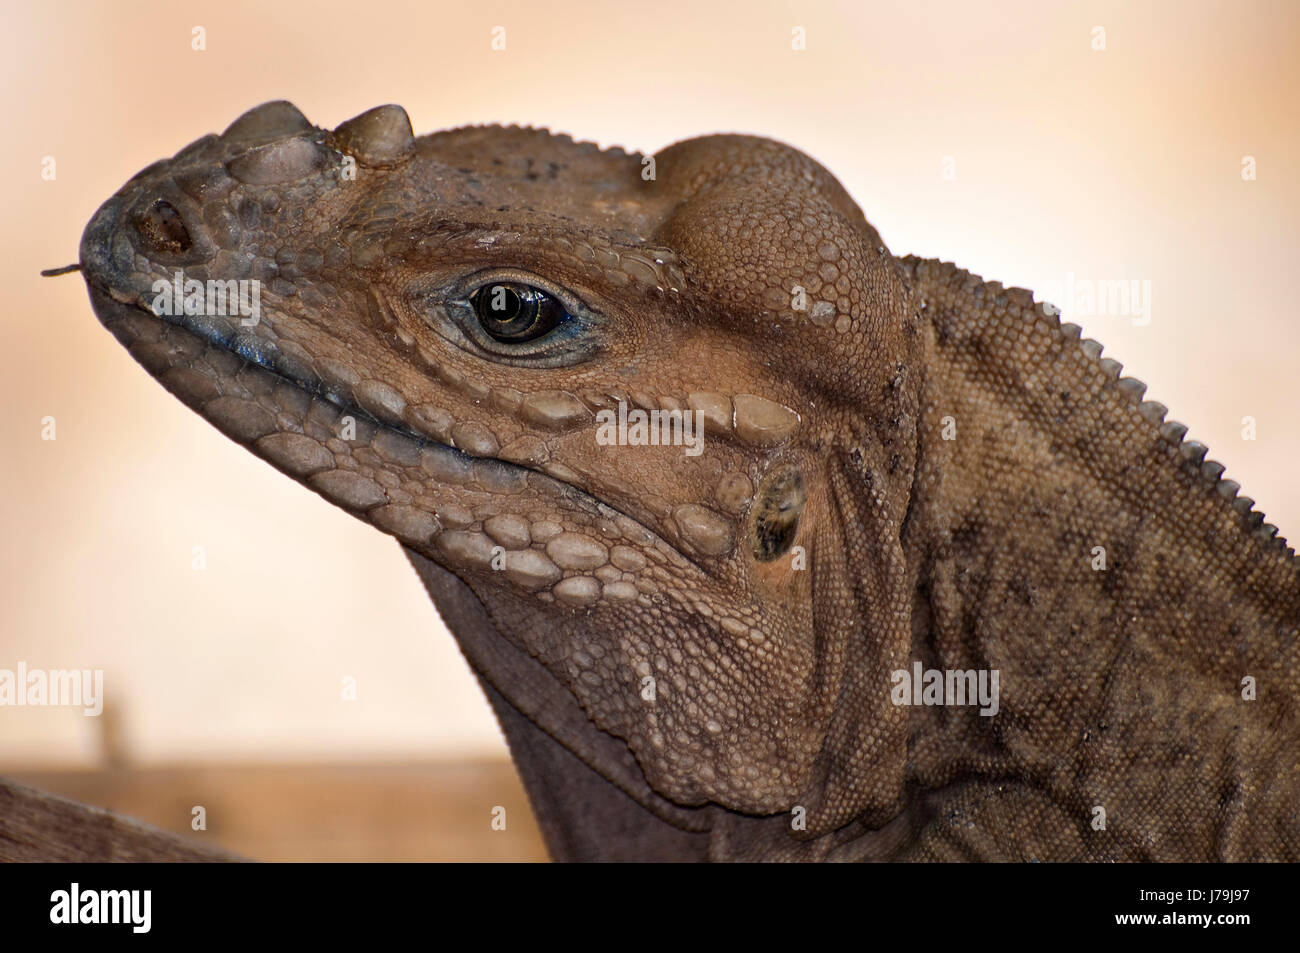 Animale creatura del rettile iguana esotici tropicali dei Caraibi dominicana dettaglio Foto Stock